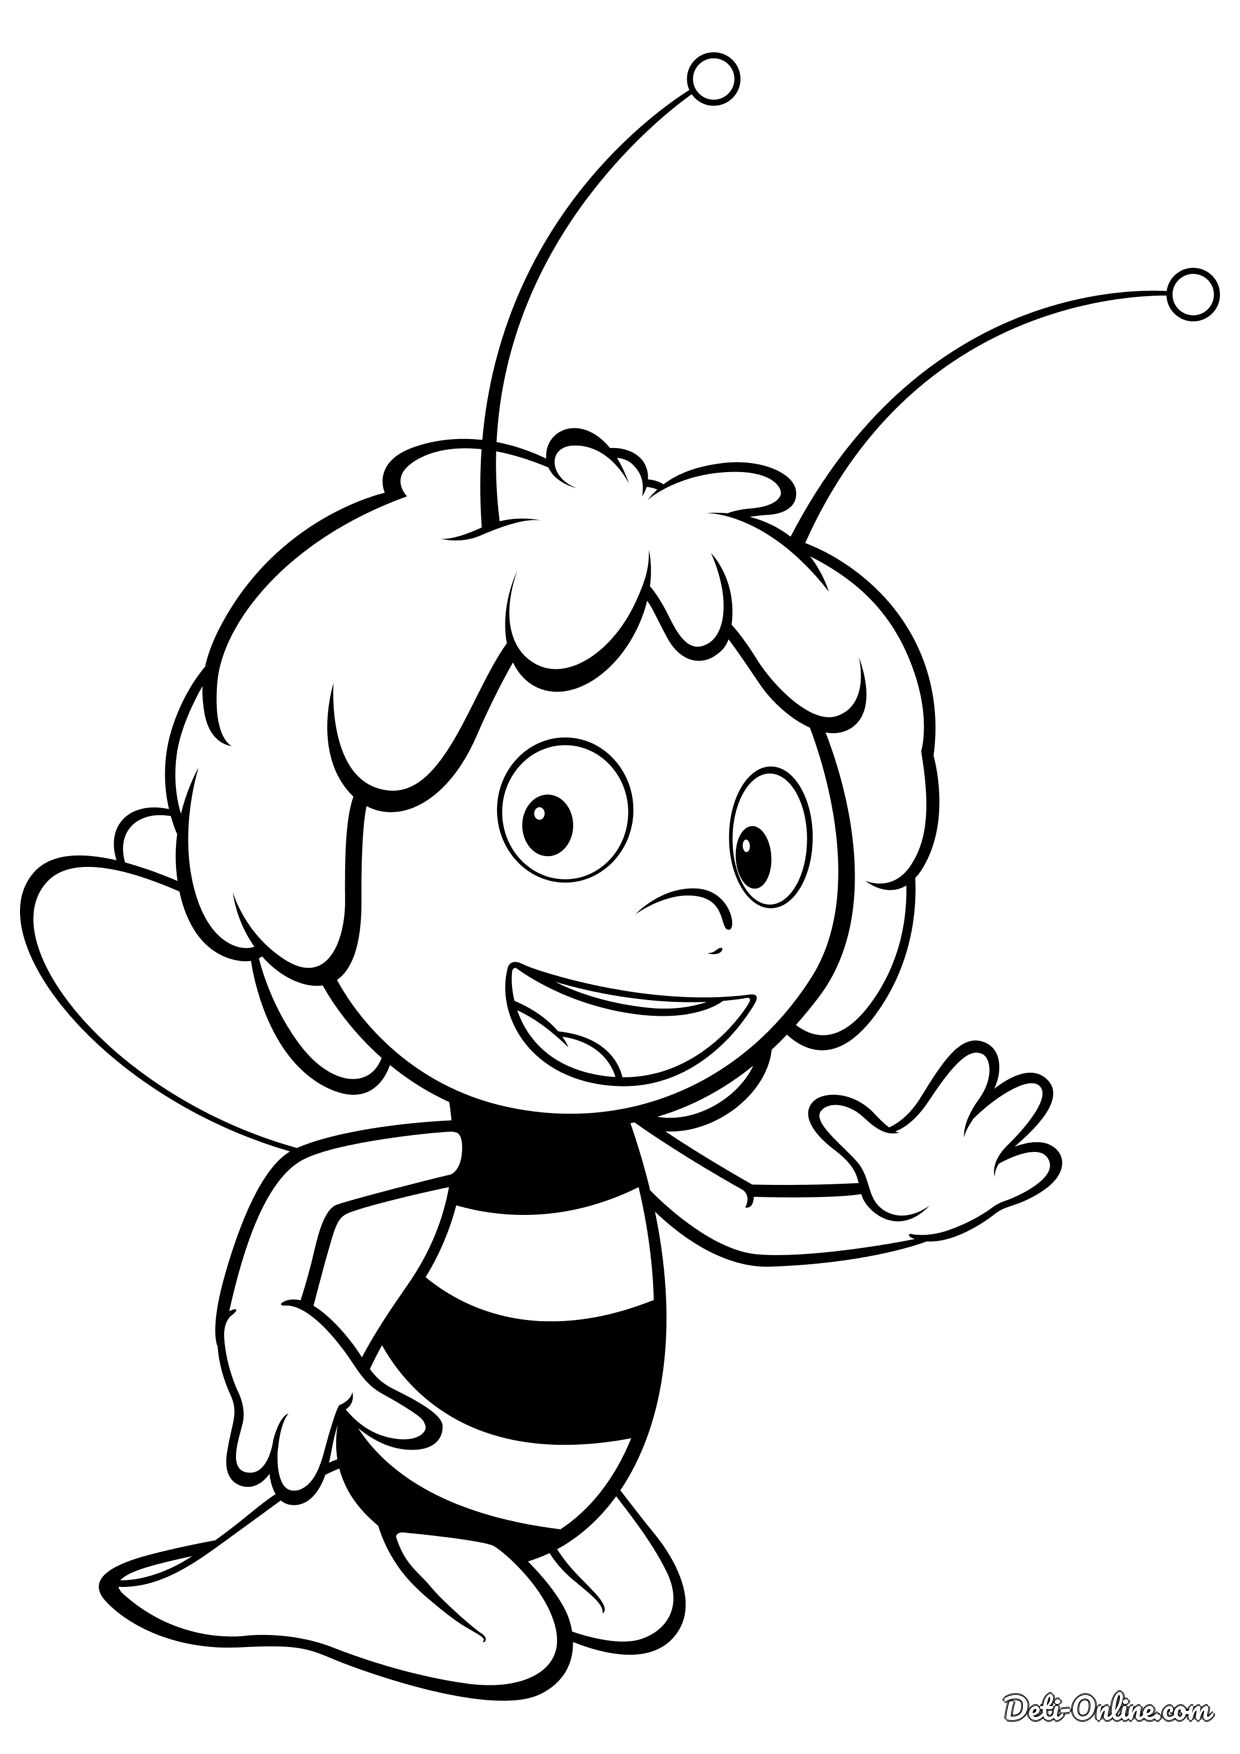 Раскраска Пчелка Майя в прыжке, скачать и распечатать раскраску раздела Пчелка Майя